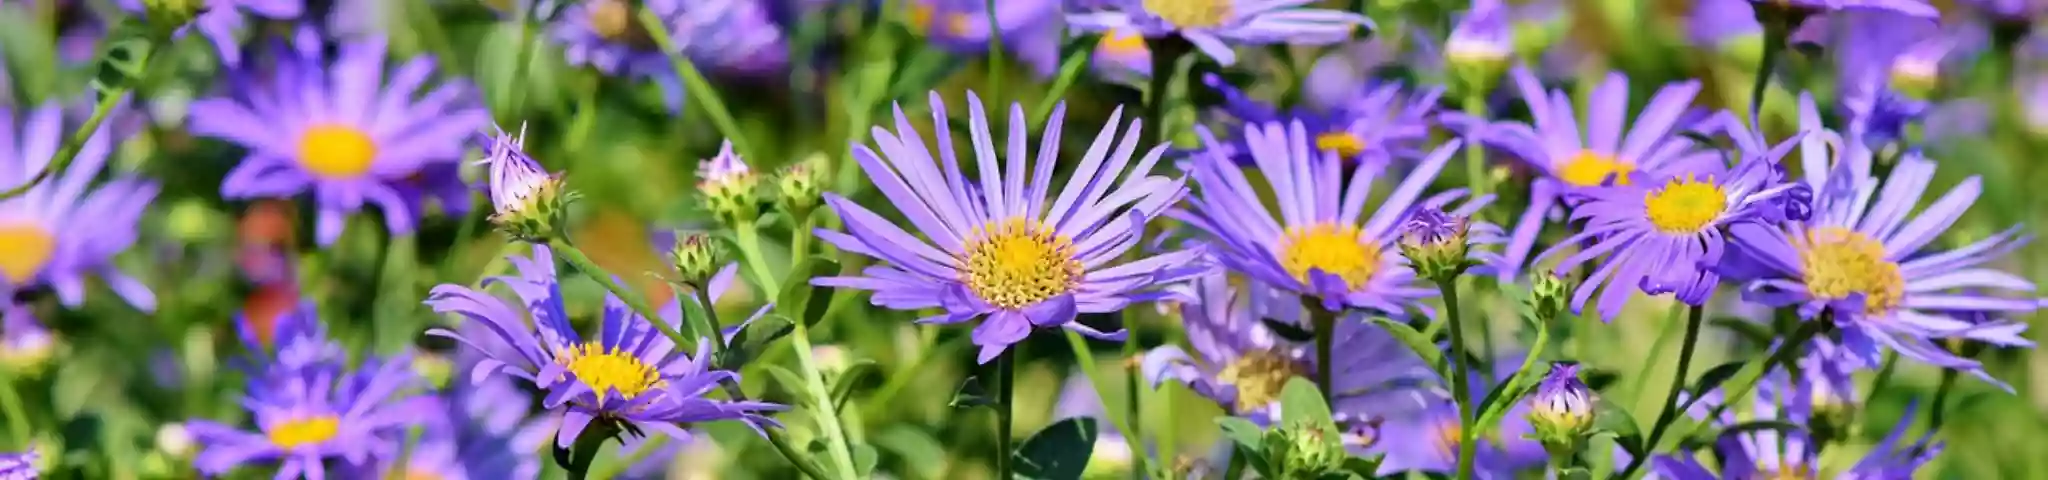 Aster Flower in Garden 